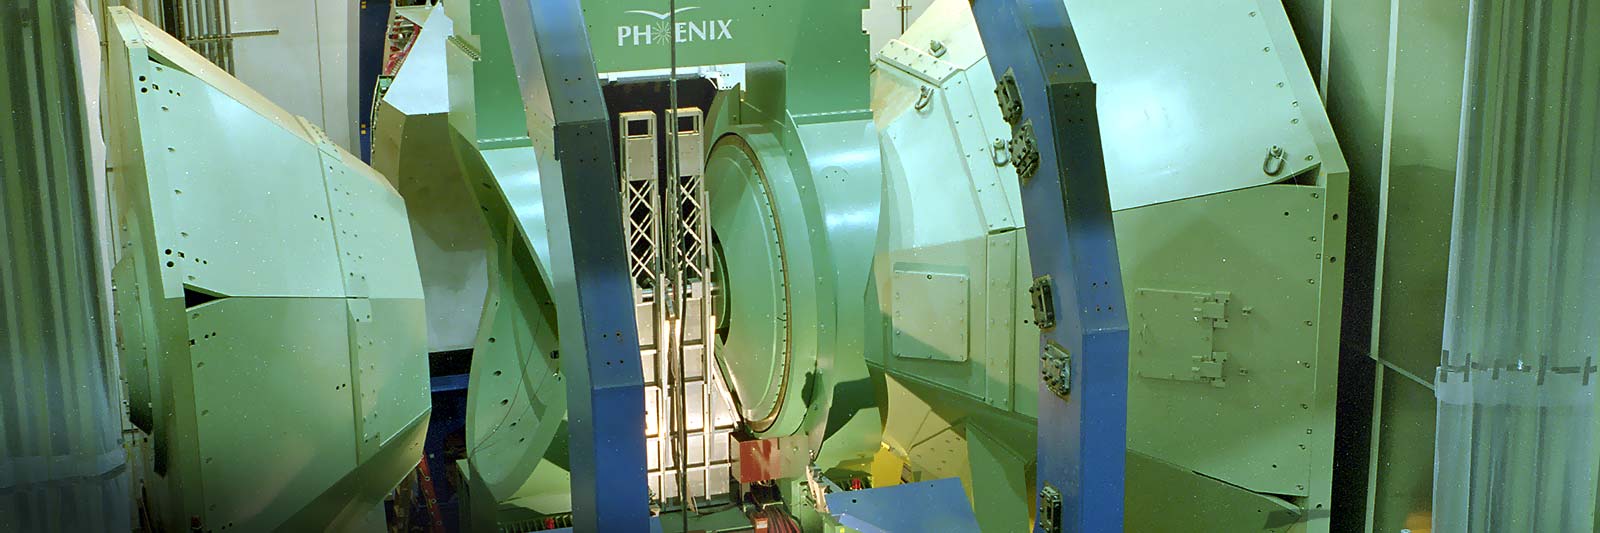 photo of PHENIX detector